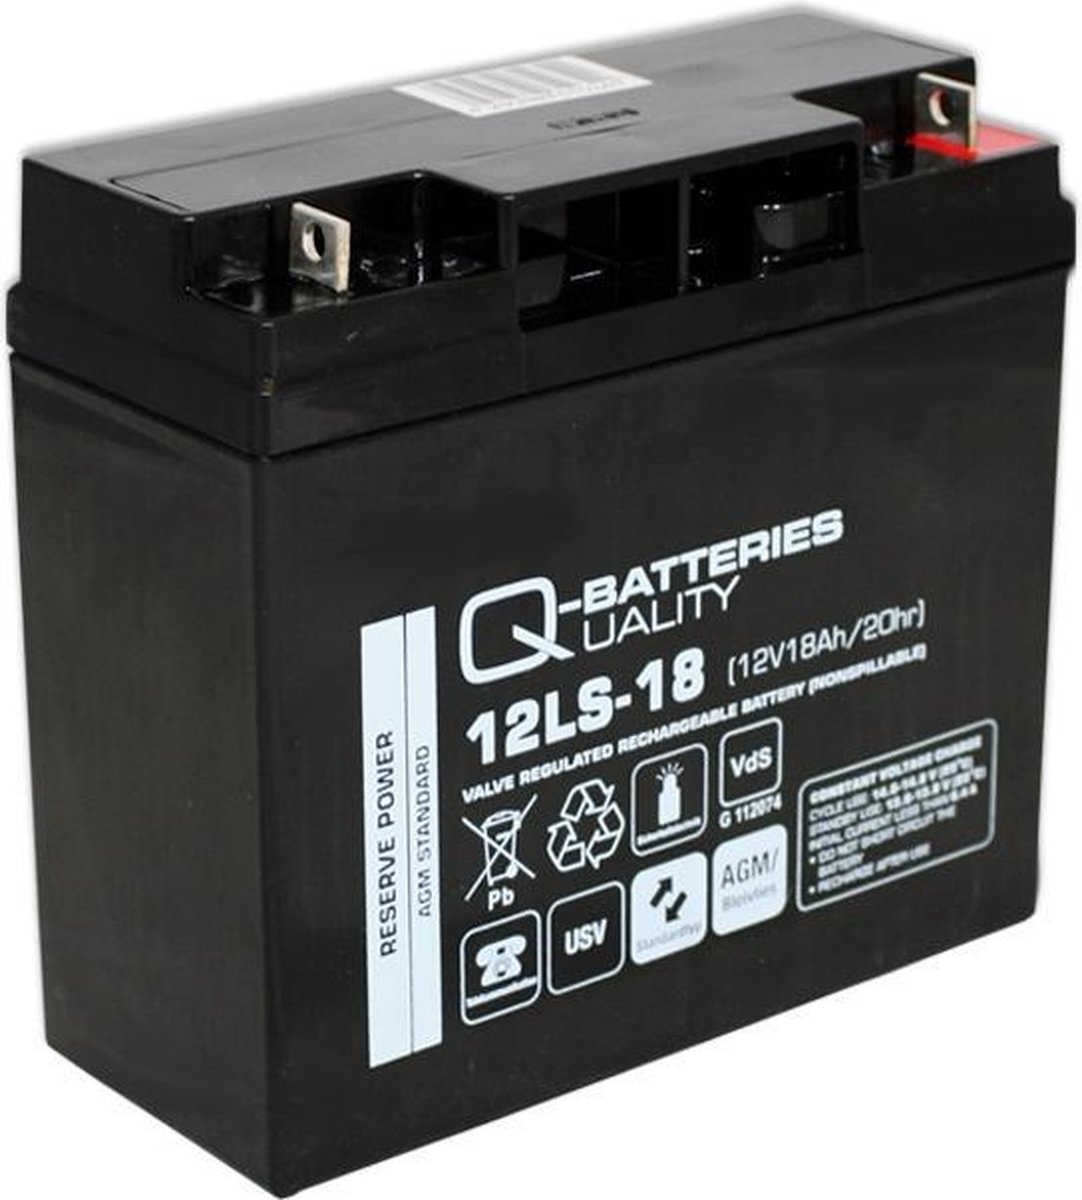 Q-Batteries Vervangingsbatterij Voor Beste Power Ferrups 500VA/brandbatterij Met VdS 4250889622817